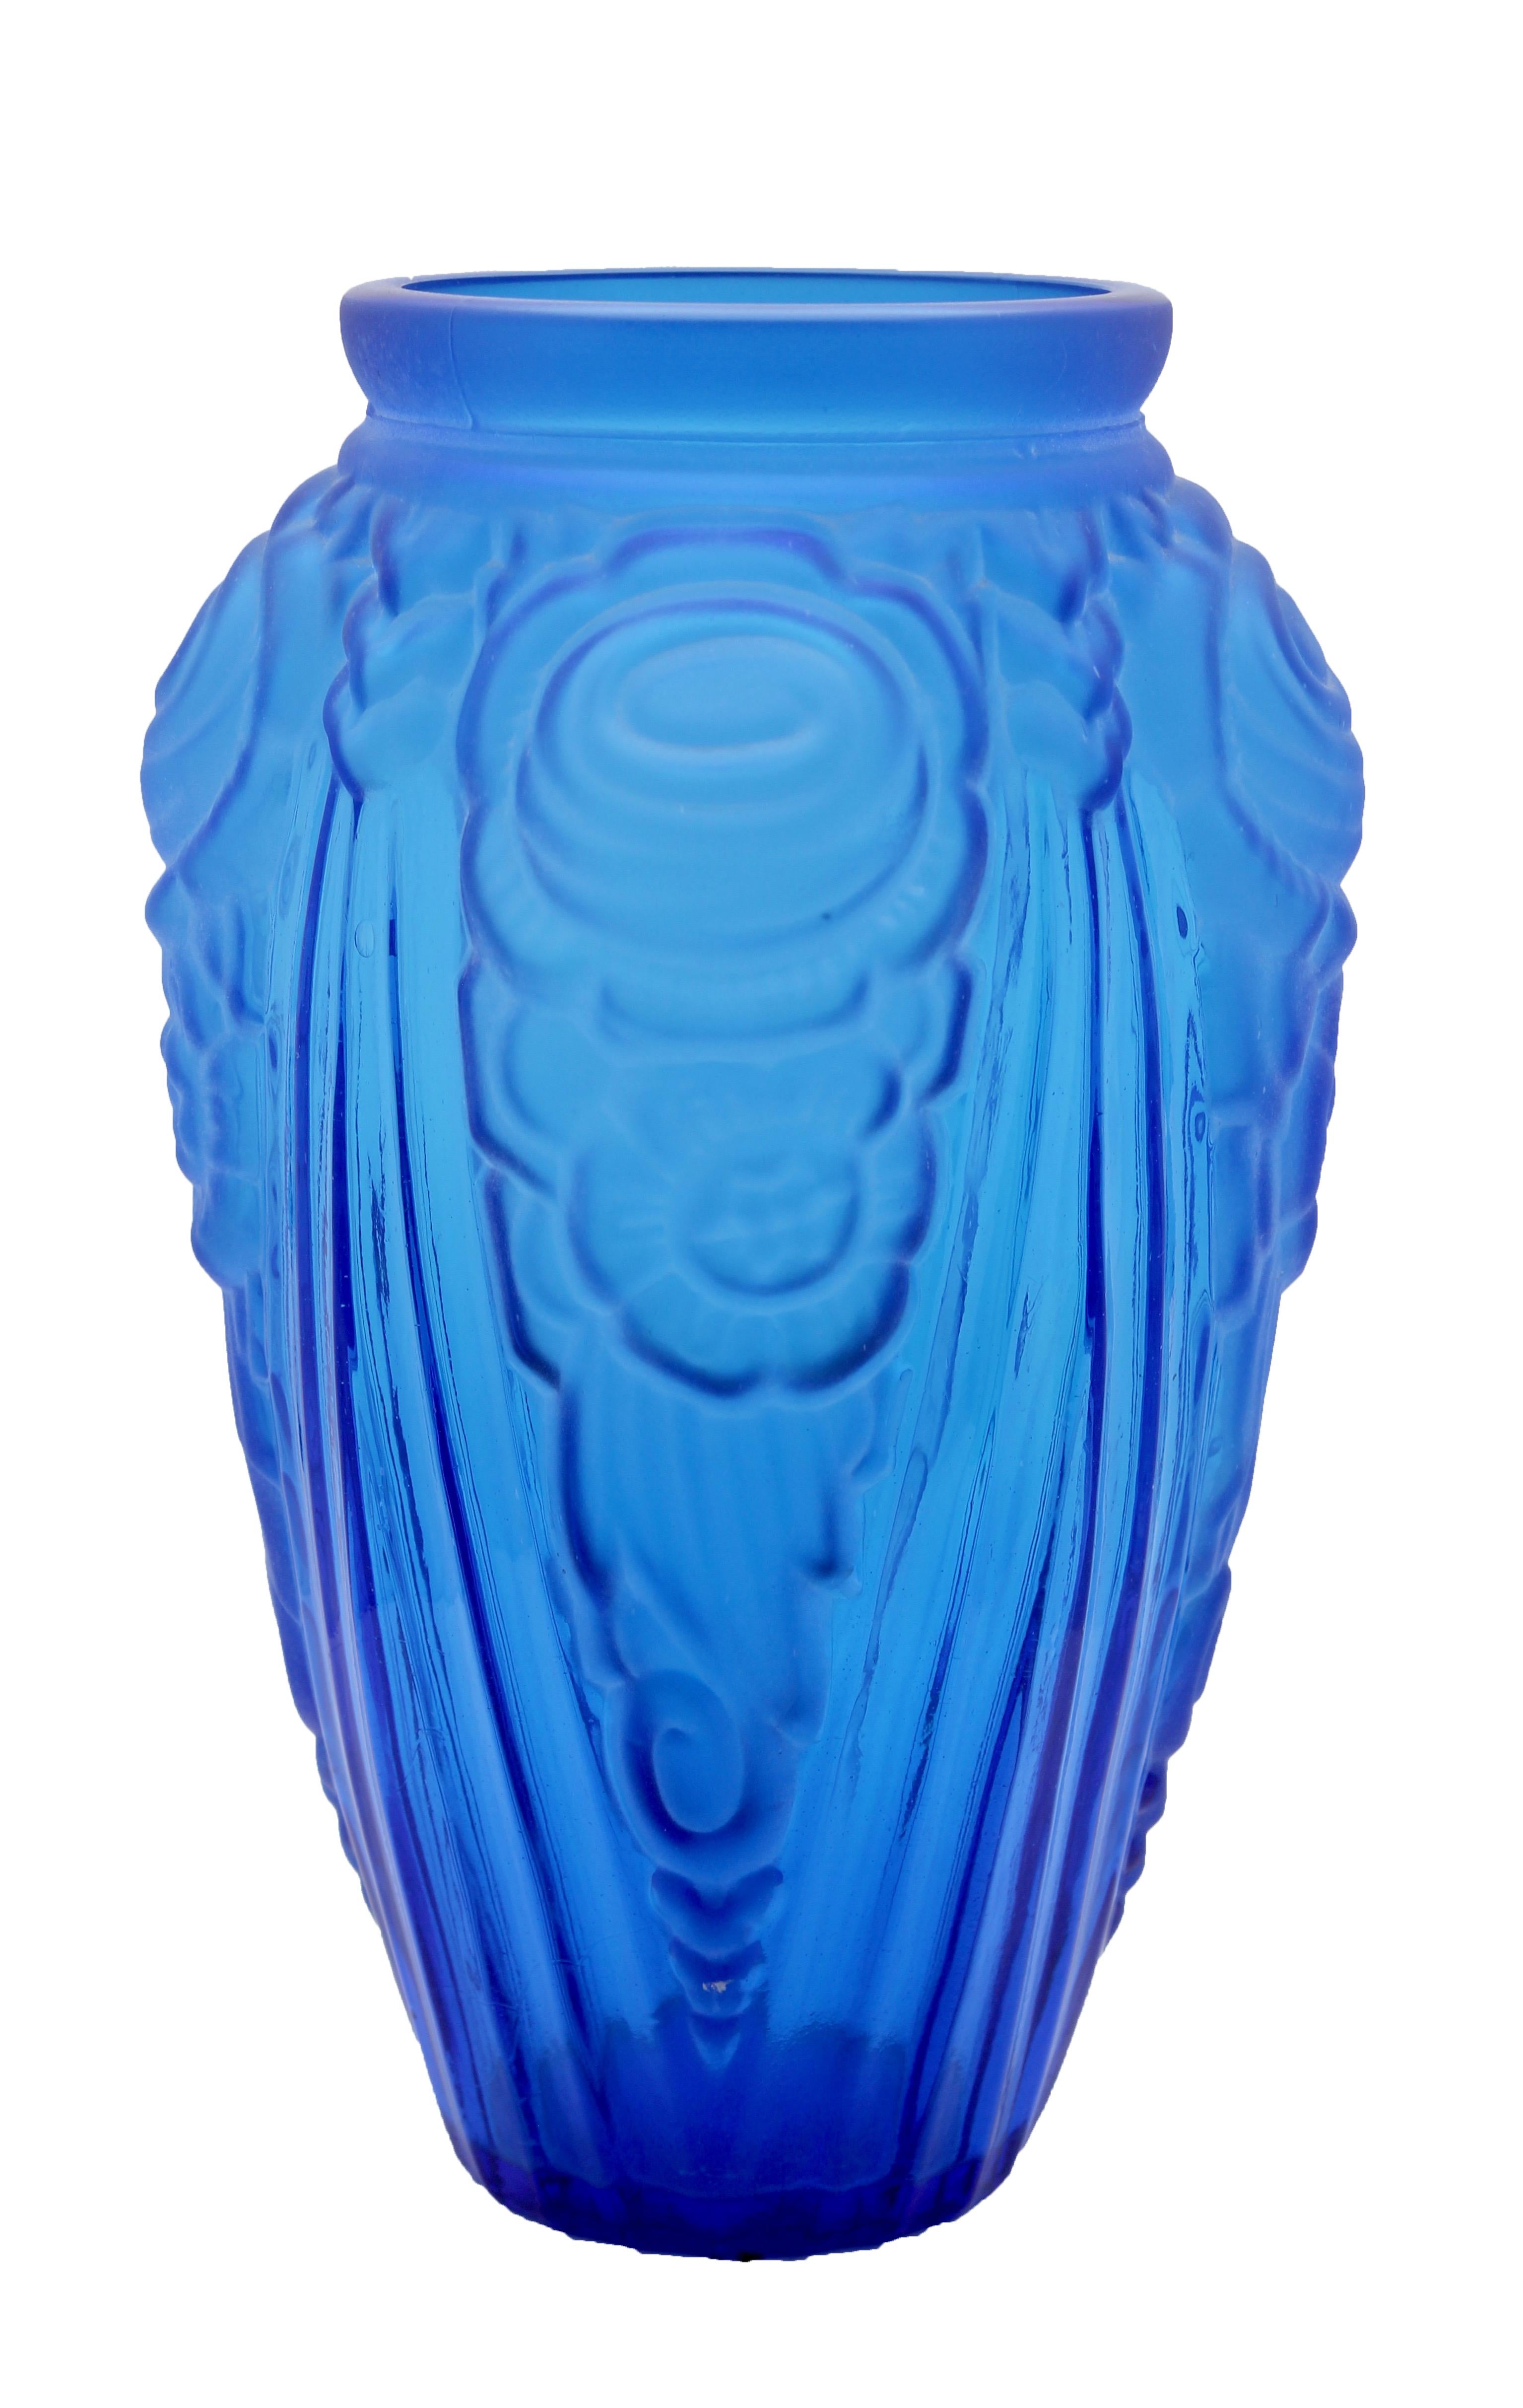 Imposant vas en verre pressé dépoli bleu de style Art Déco. Ce grand vase oppose la géométrie des lignes aux formes plus rondes des fleurs et date du début des années 1930. Il a été créé dans l'usine peu reconnue de Neiman Stolle à Vratislava:: en